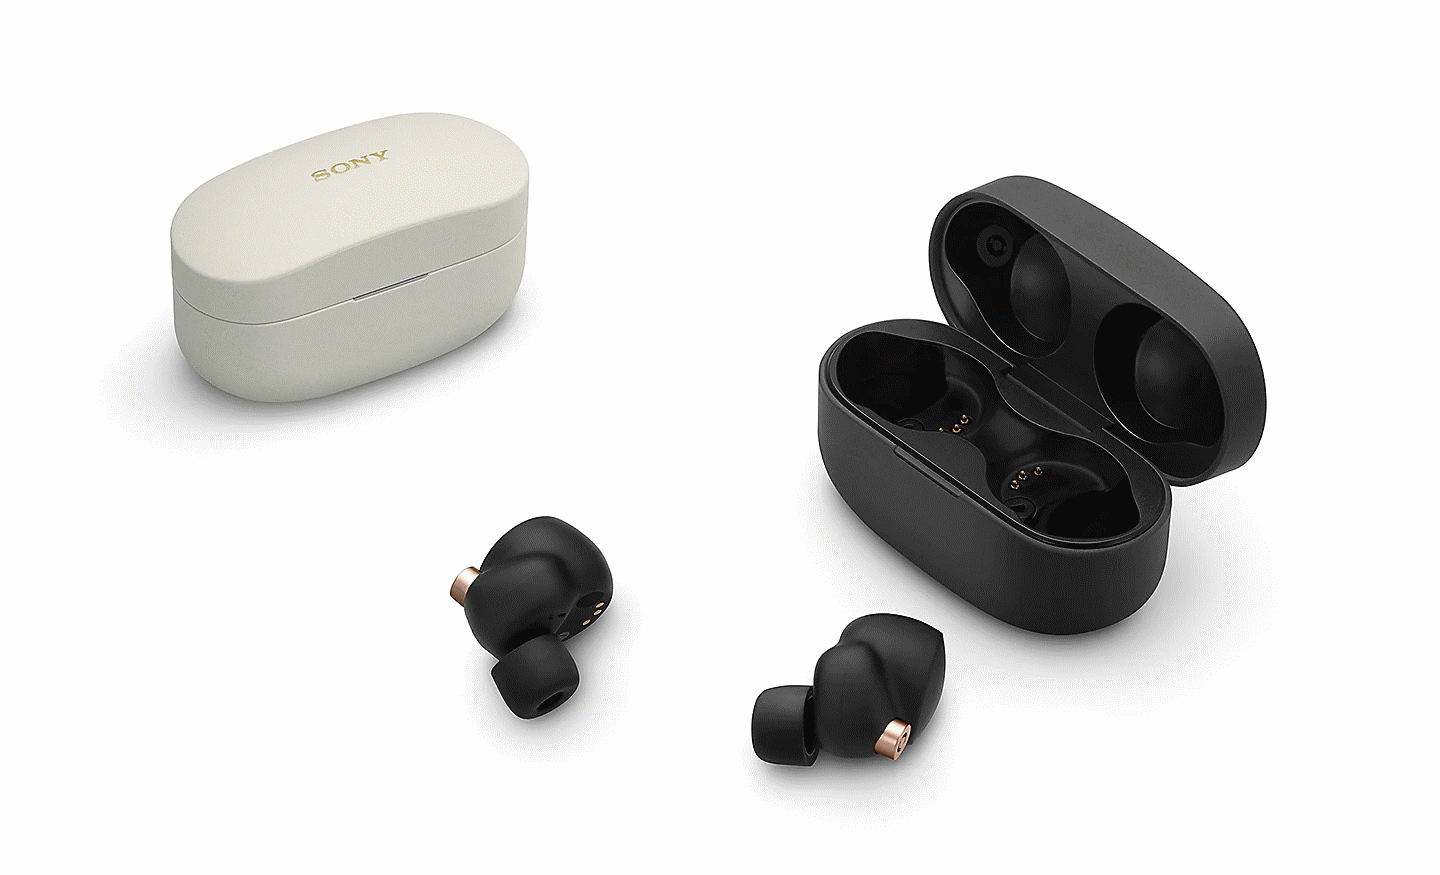 WF-1000XM4 Kopfhörer und Ladeetui in Schwarz neben einem Ladeetui in Weiß